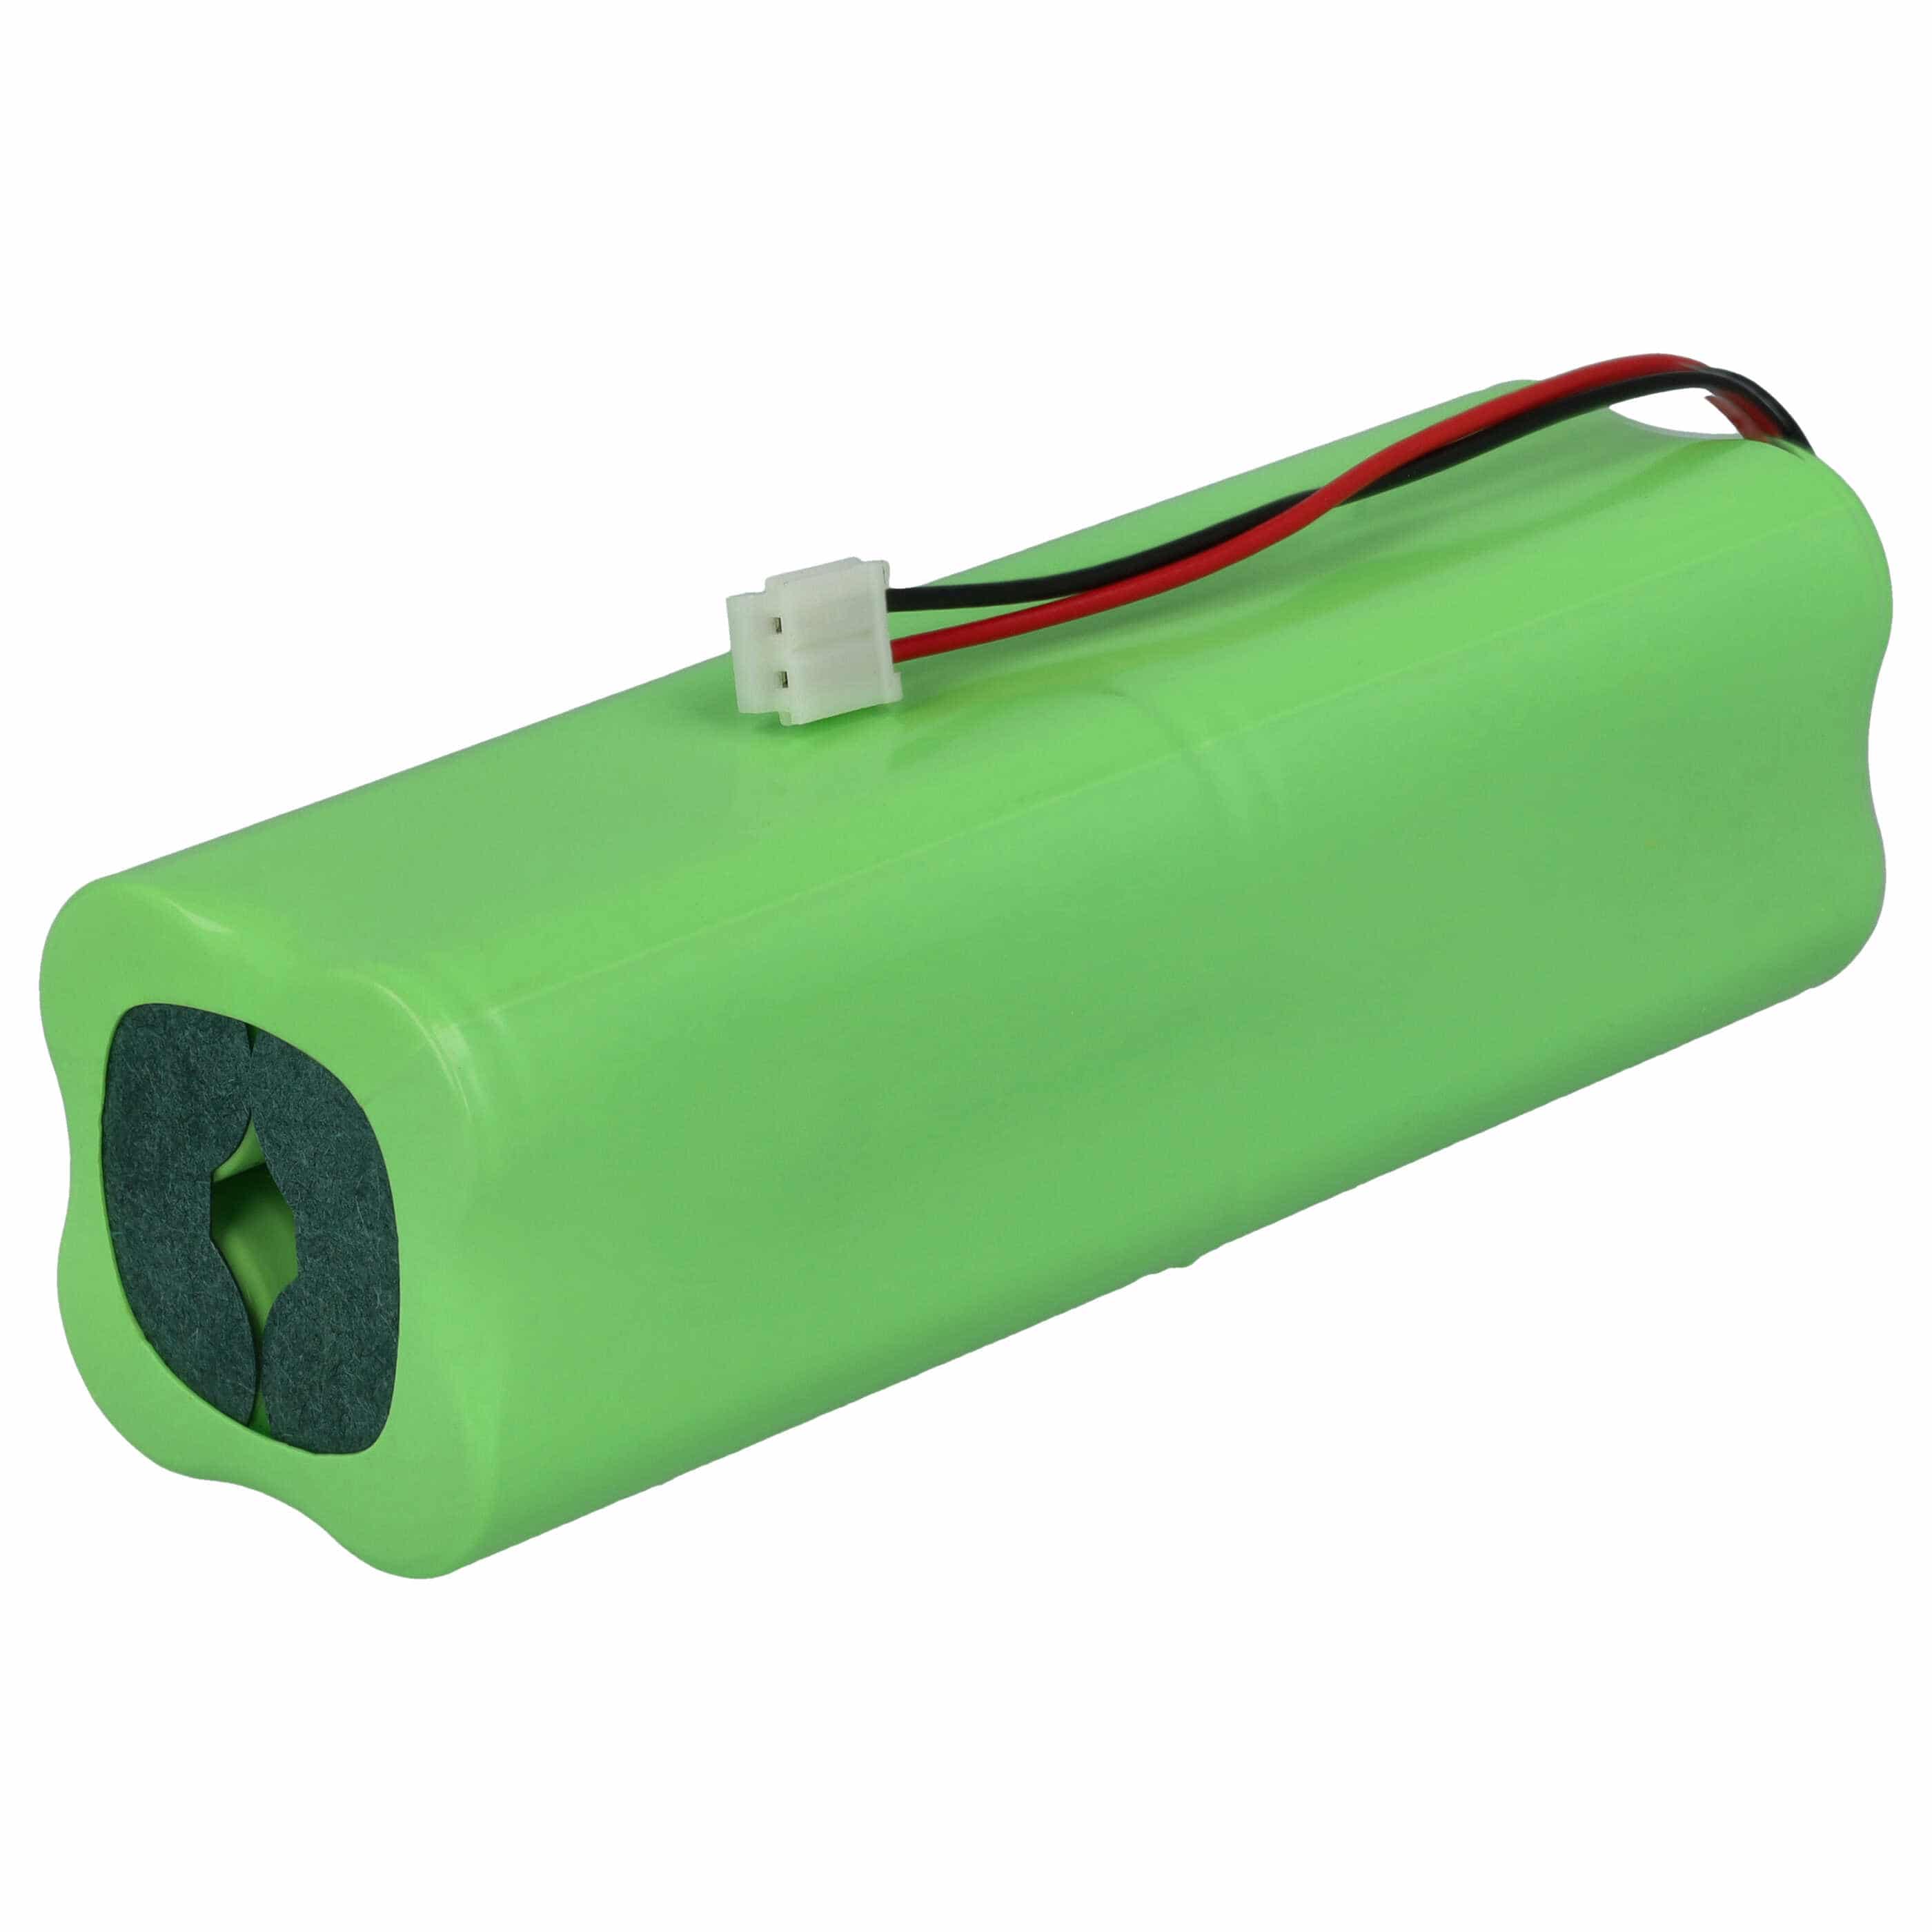 Batterie remplace Spektrum JRPB5011, JR-2, JR-2S, JR-A, JR2, JR2S pour manette de drone - 2000mAh 9,6V NiMH